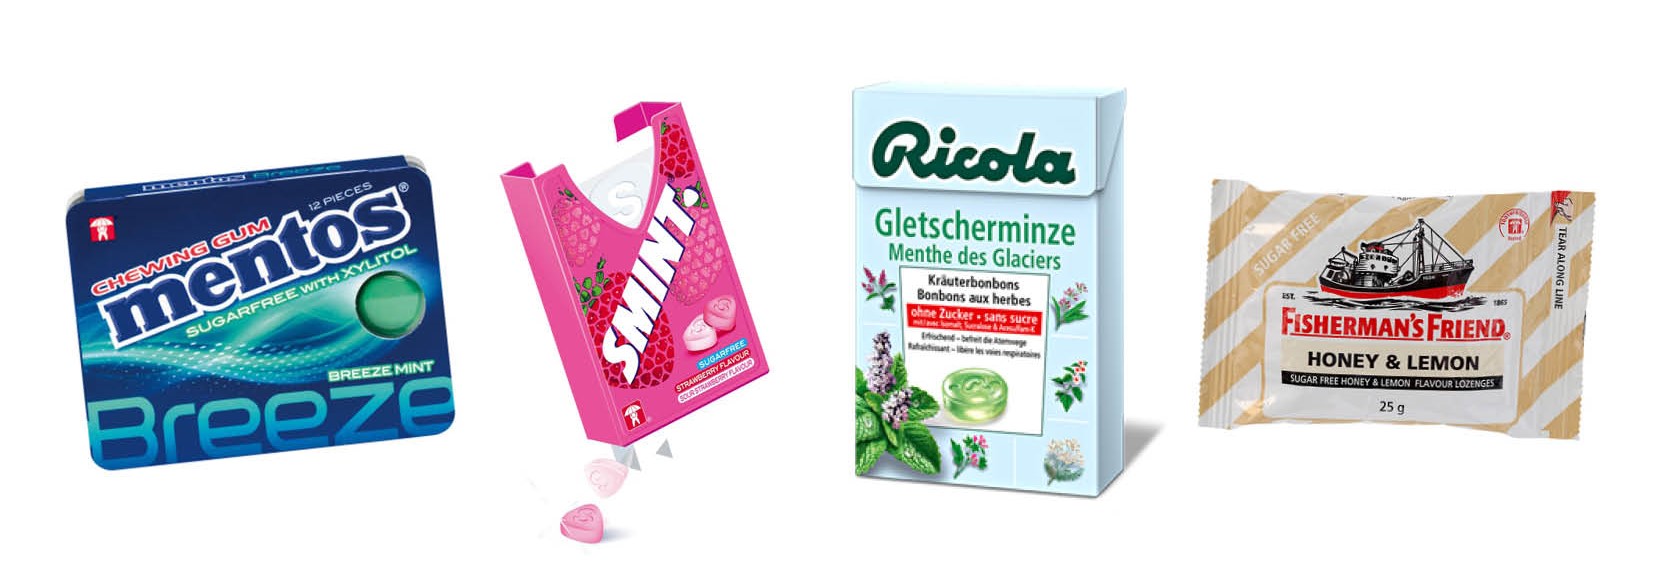 Chewing-gum sans sucre pure fresh goût citrus , Mentos ( 50